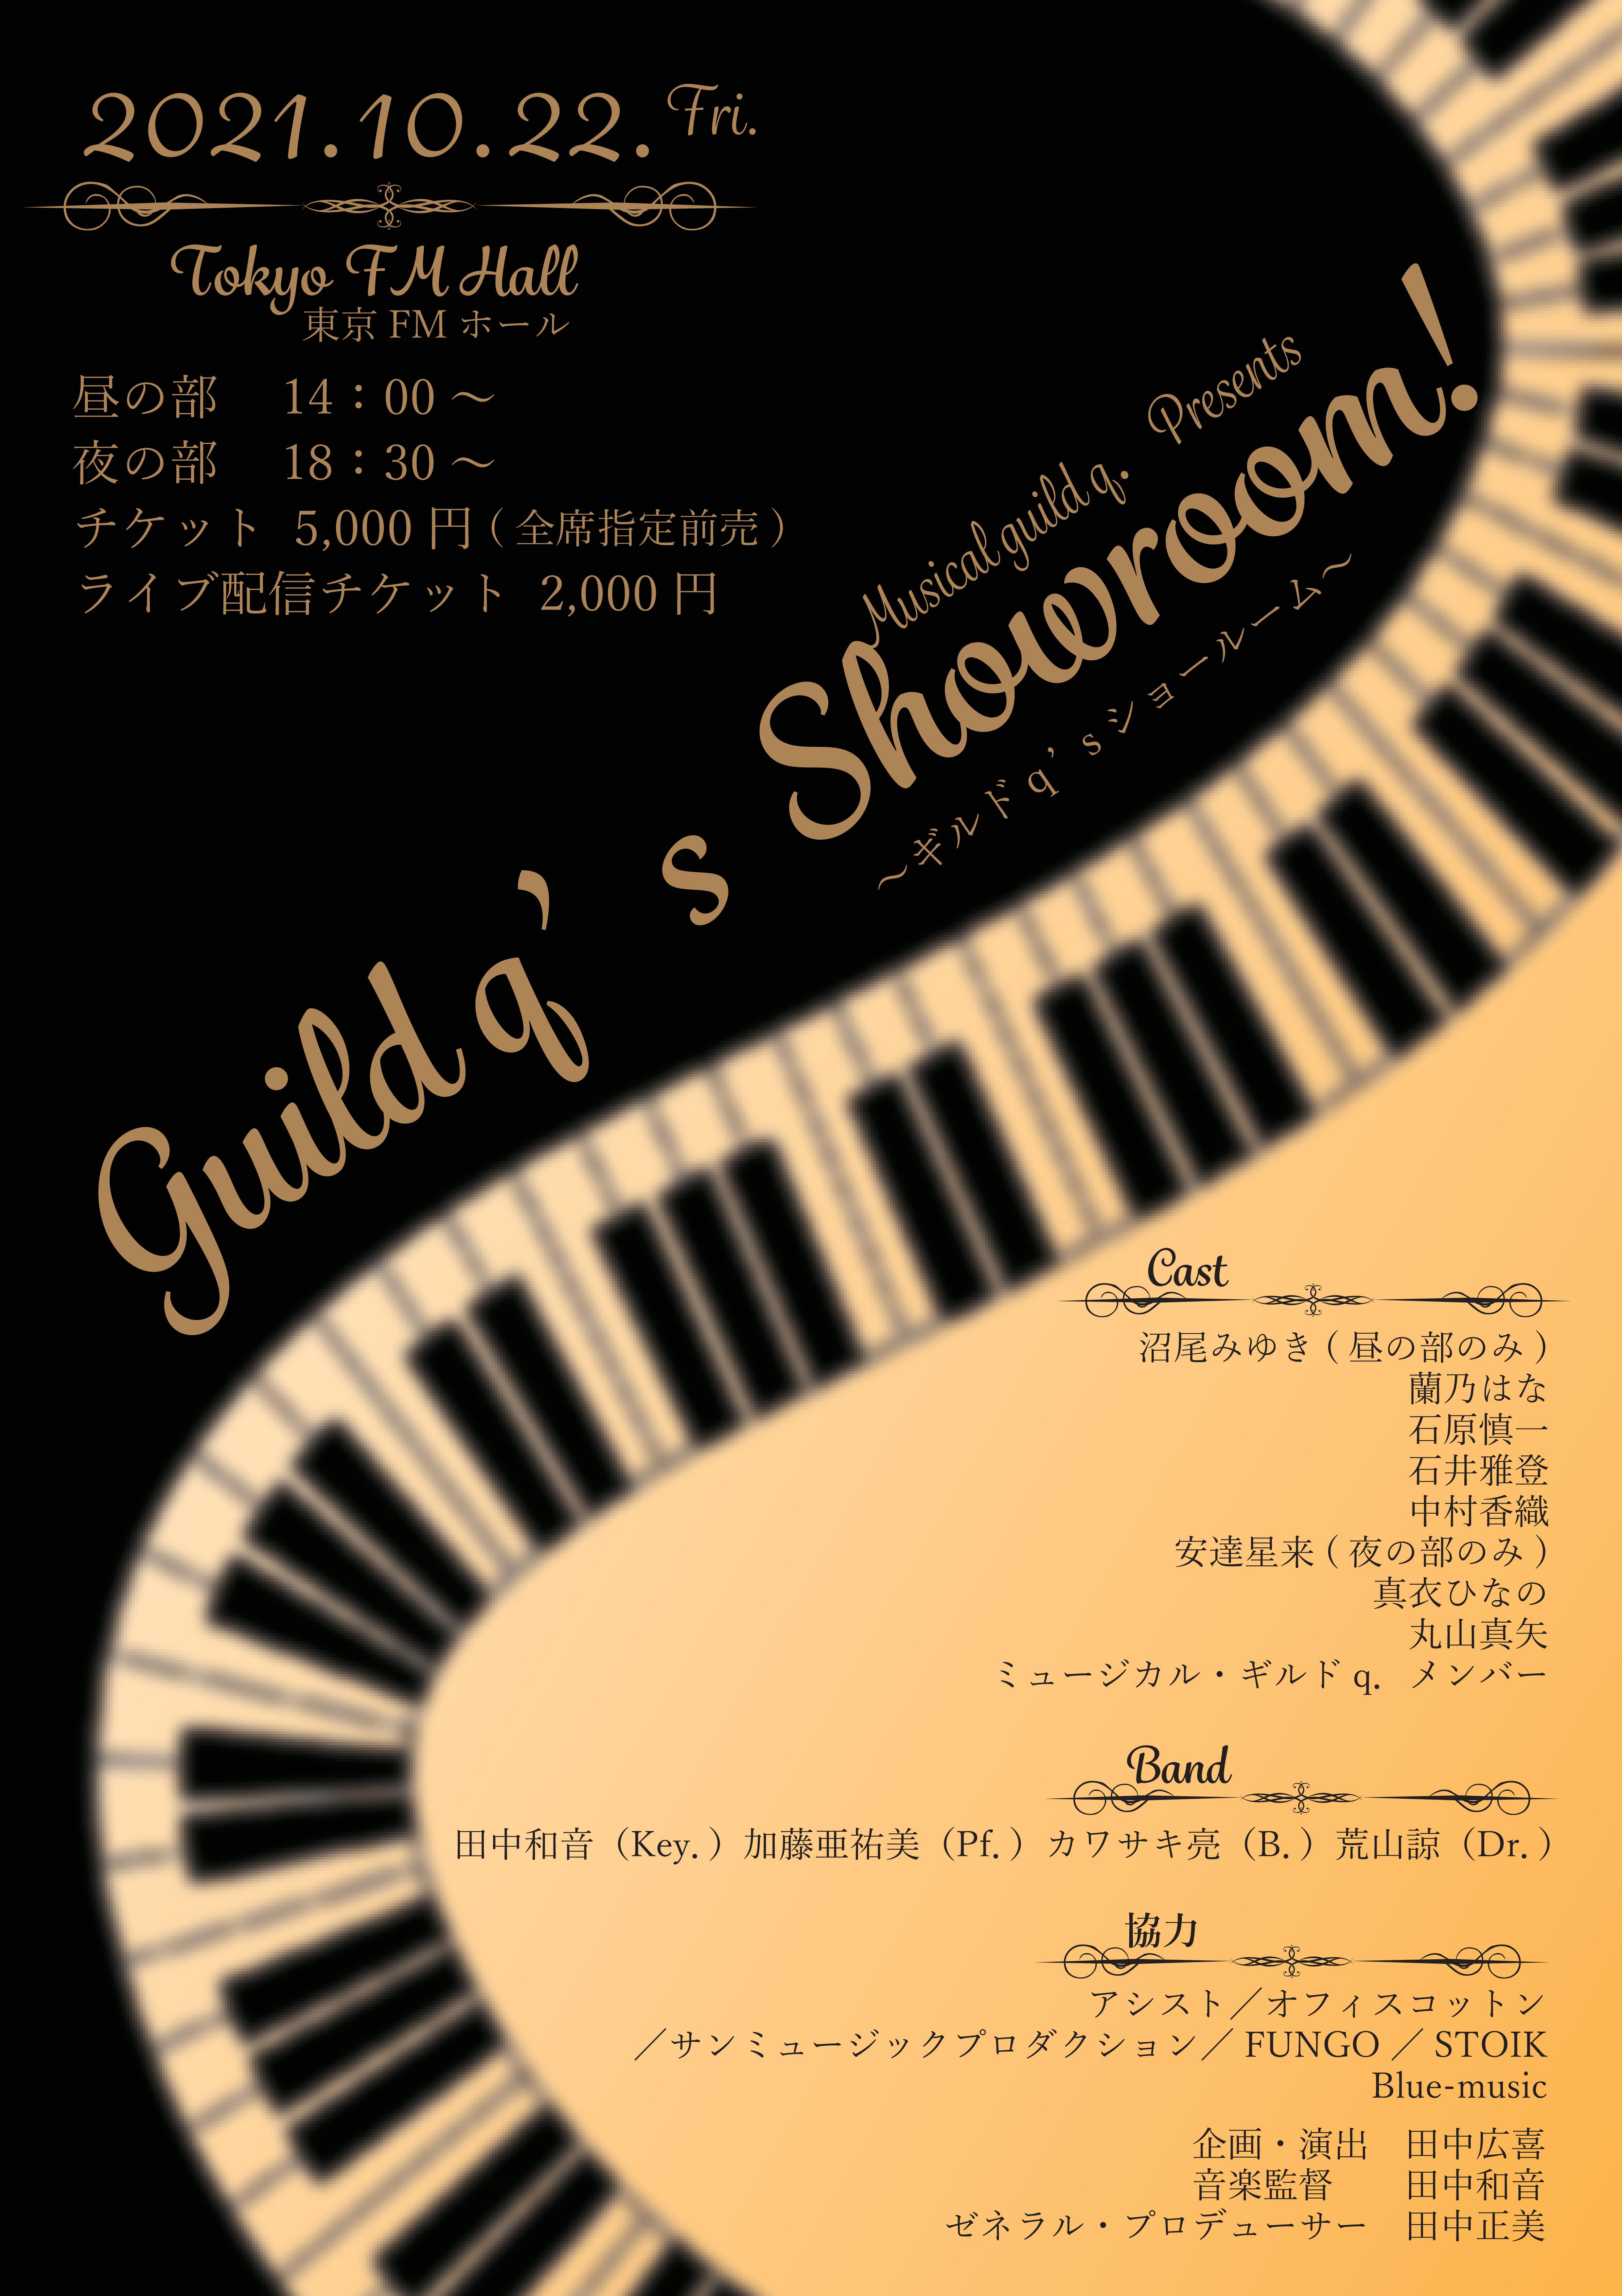 ミュージカル・ギルド q.presents『Guildq’s Showroom! 』